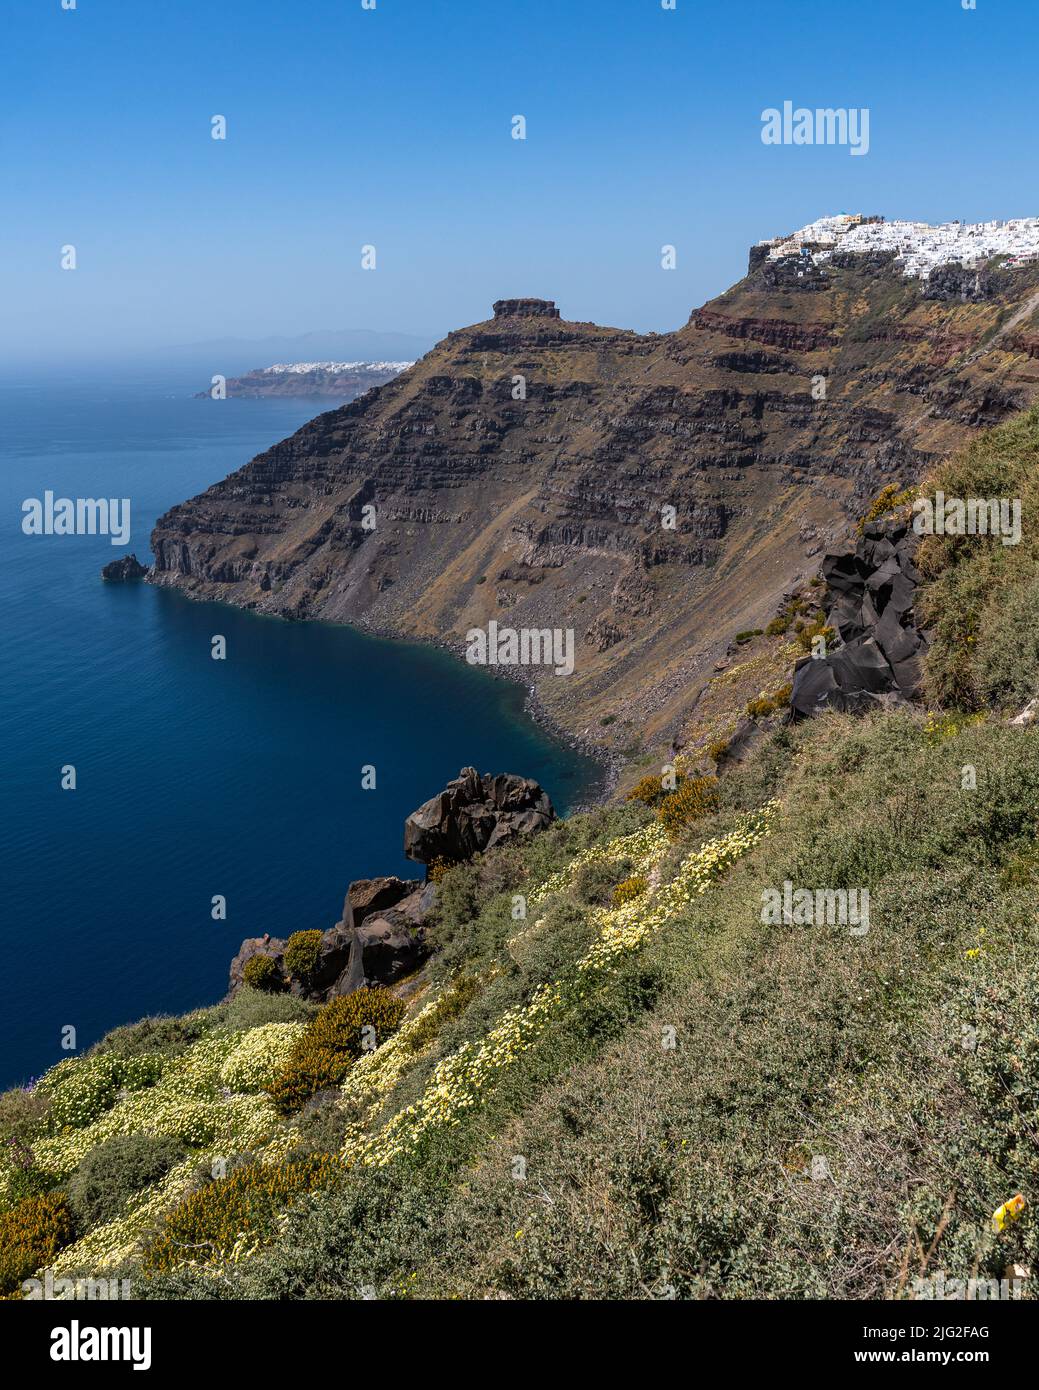 Vue panoramique sur les falaises et la côte de Santorin avec le célèbre rocher de Skaros, en Grèce Banque D'Images